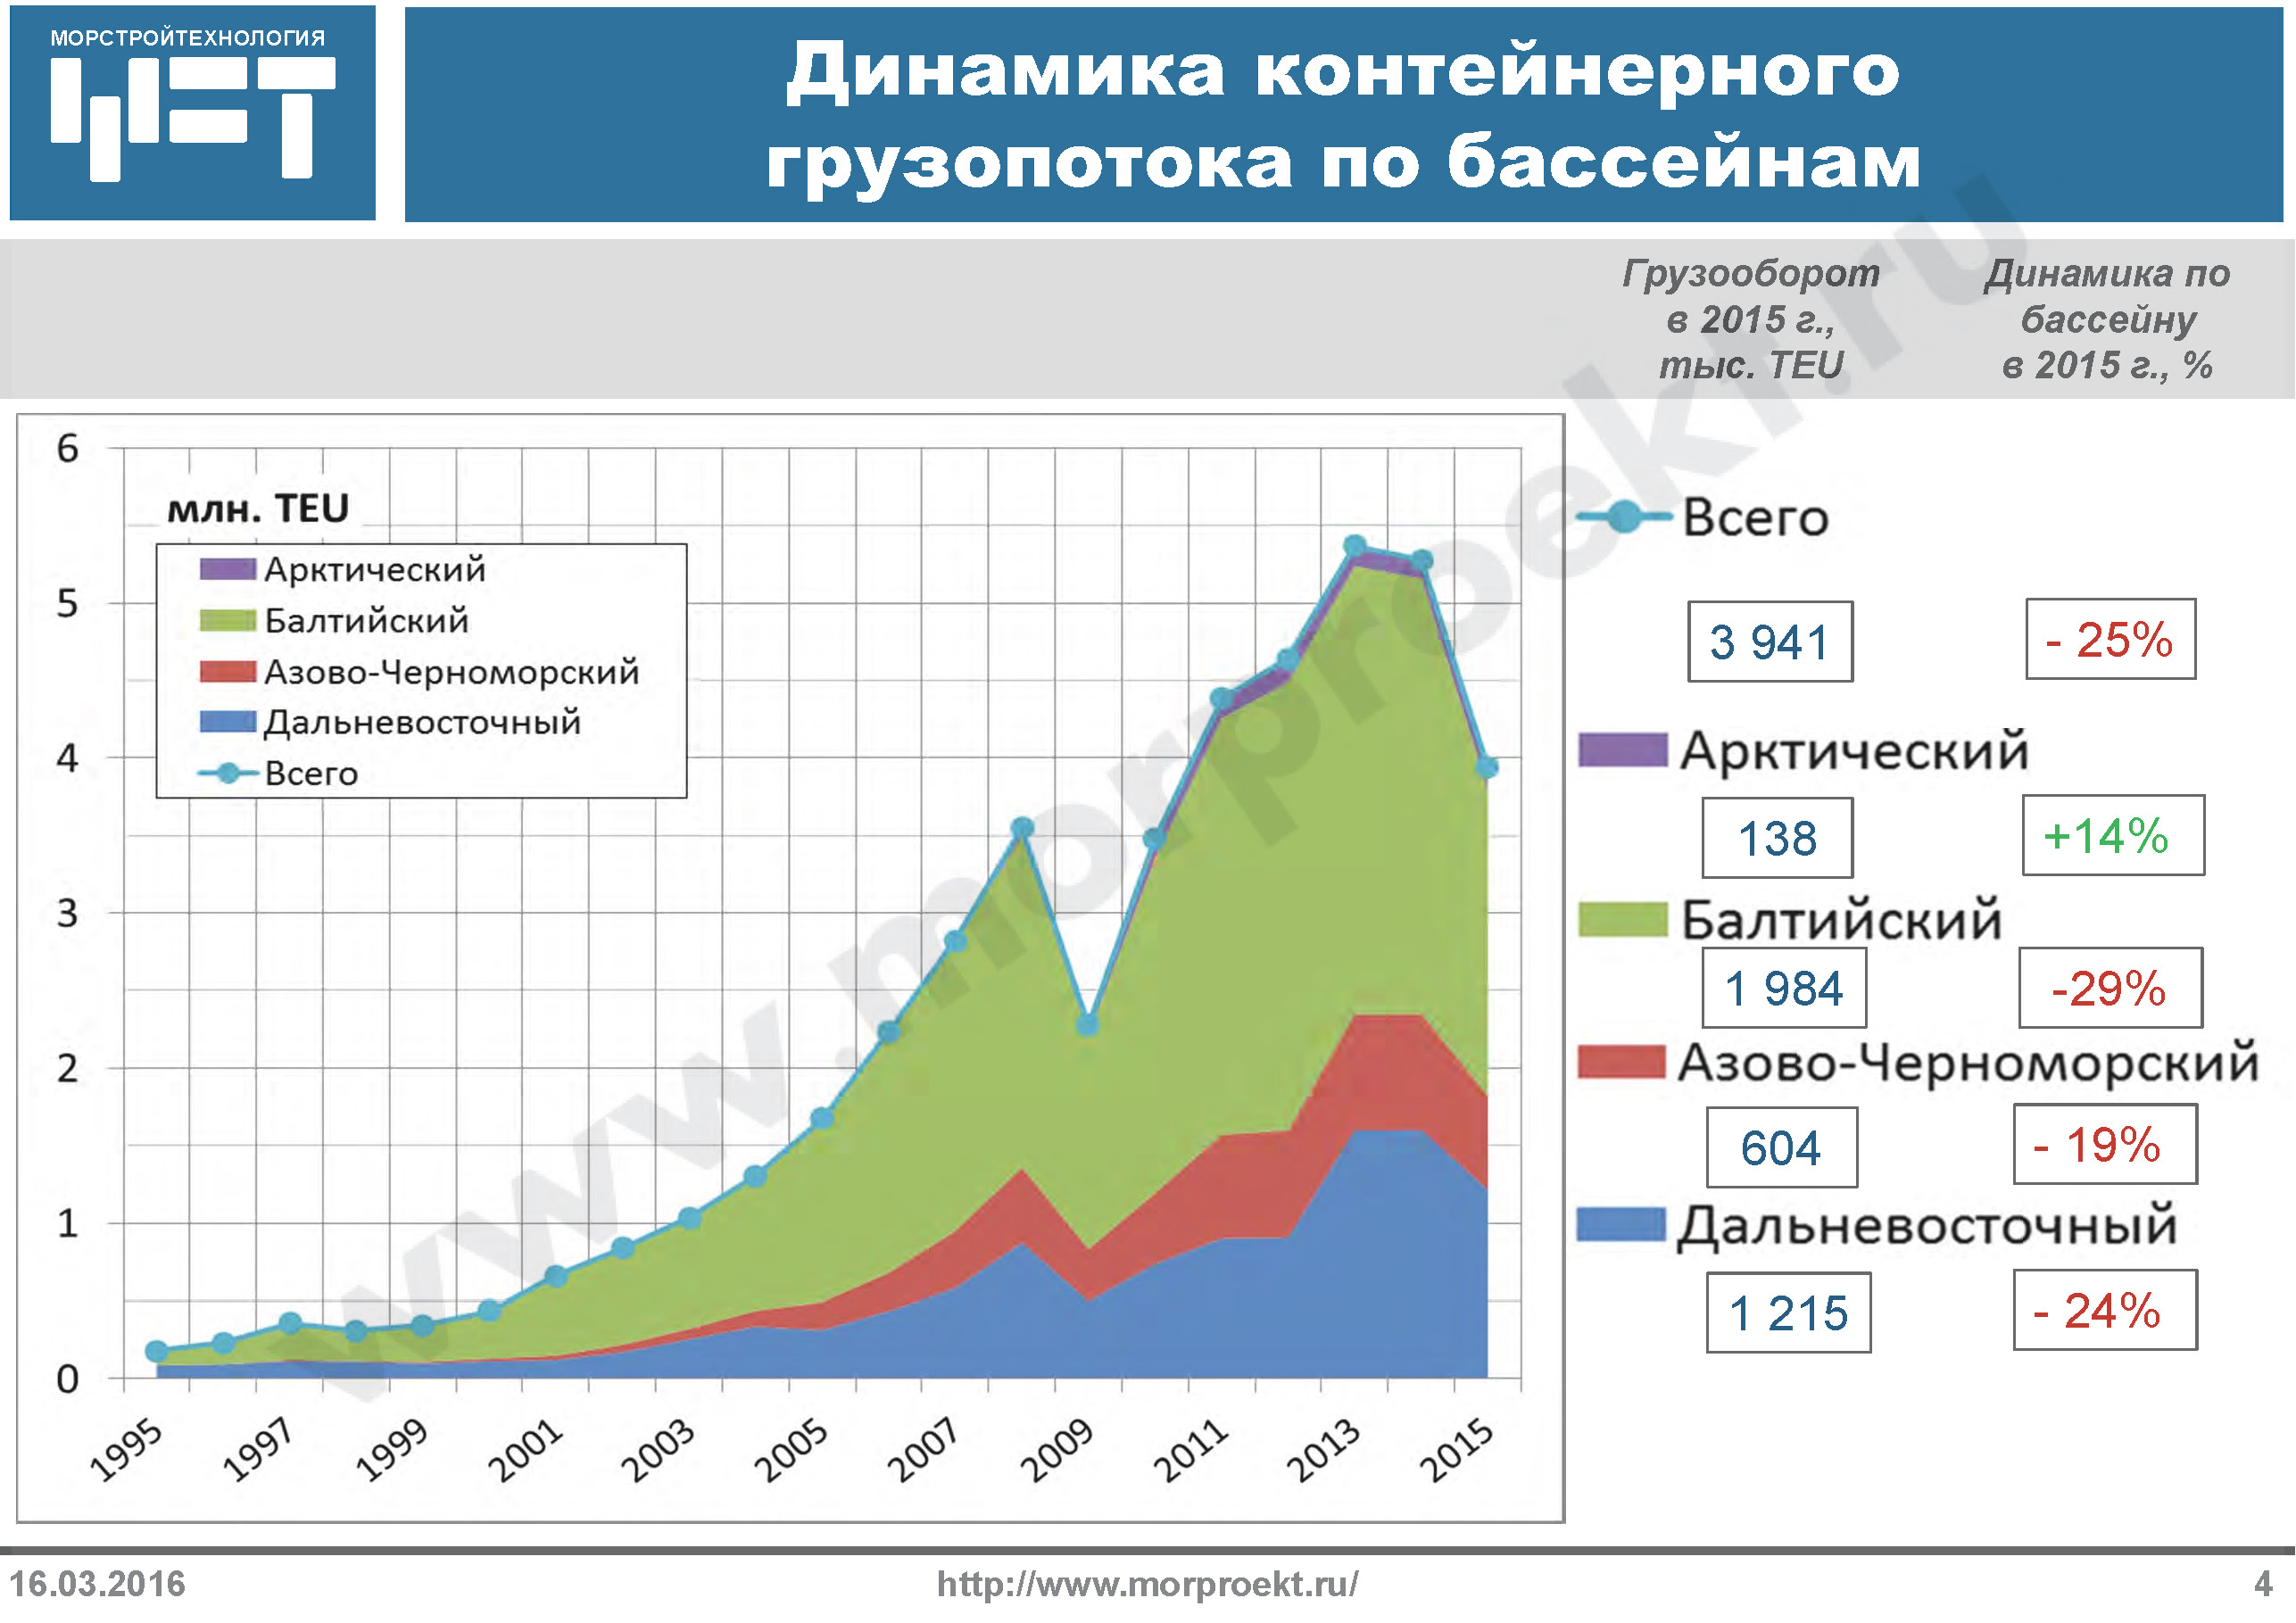 Однако в России динамика контейнерного рынка выглядит иначе